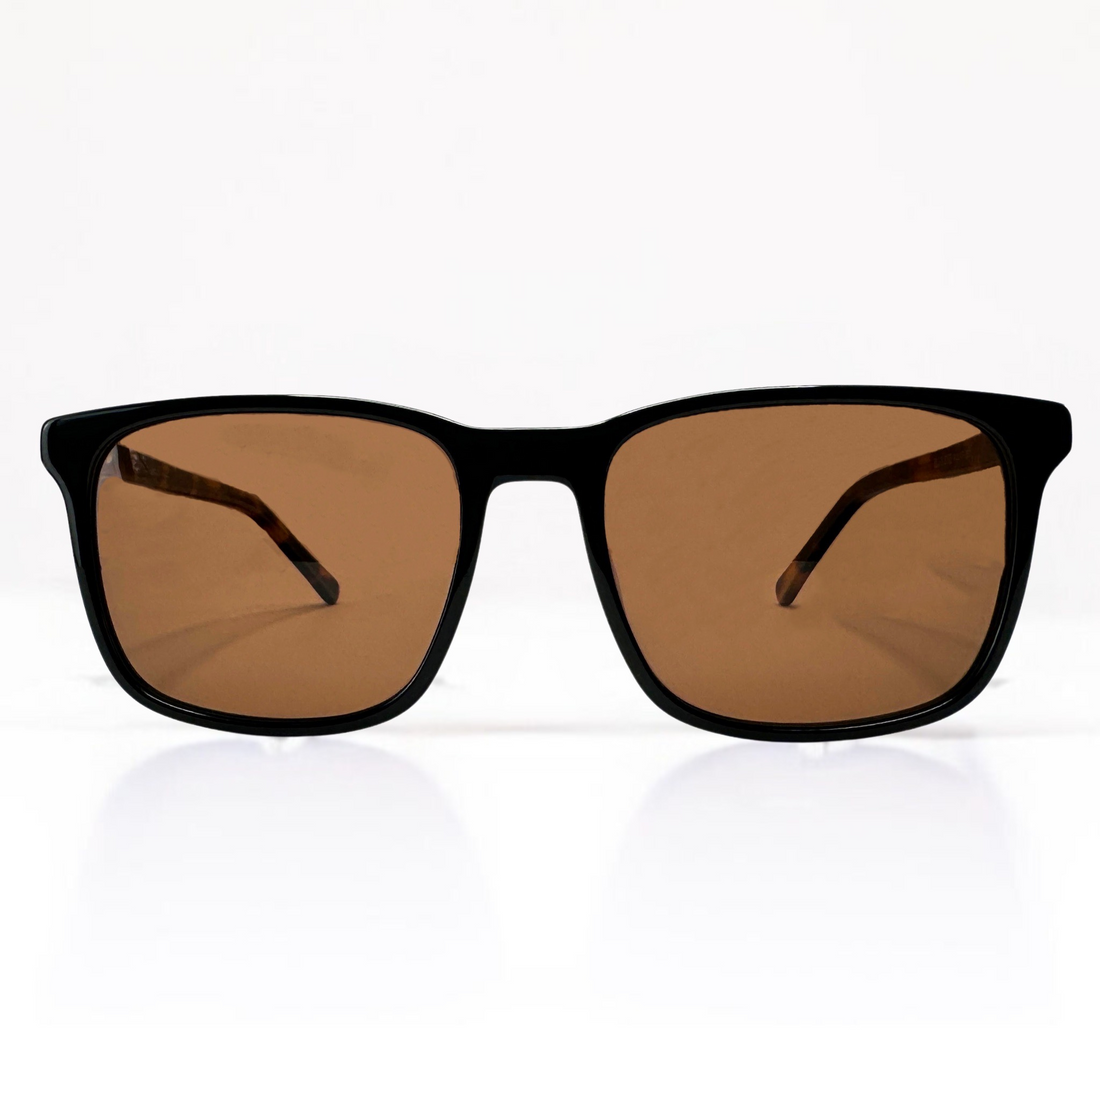 Buy Brown Sunglasses for Men by Resist Eyewear Online